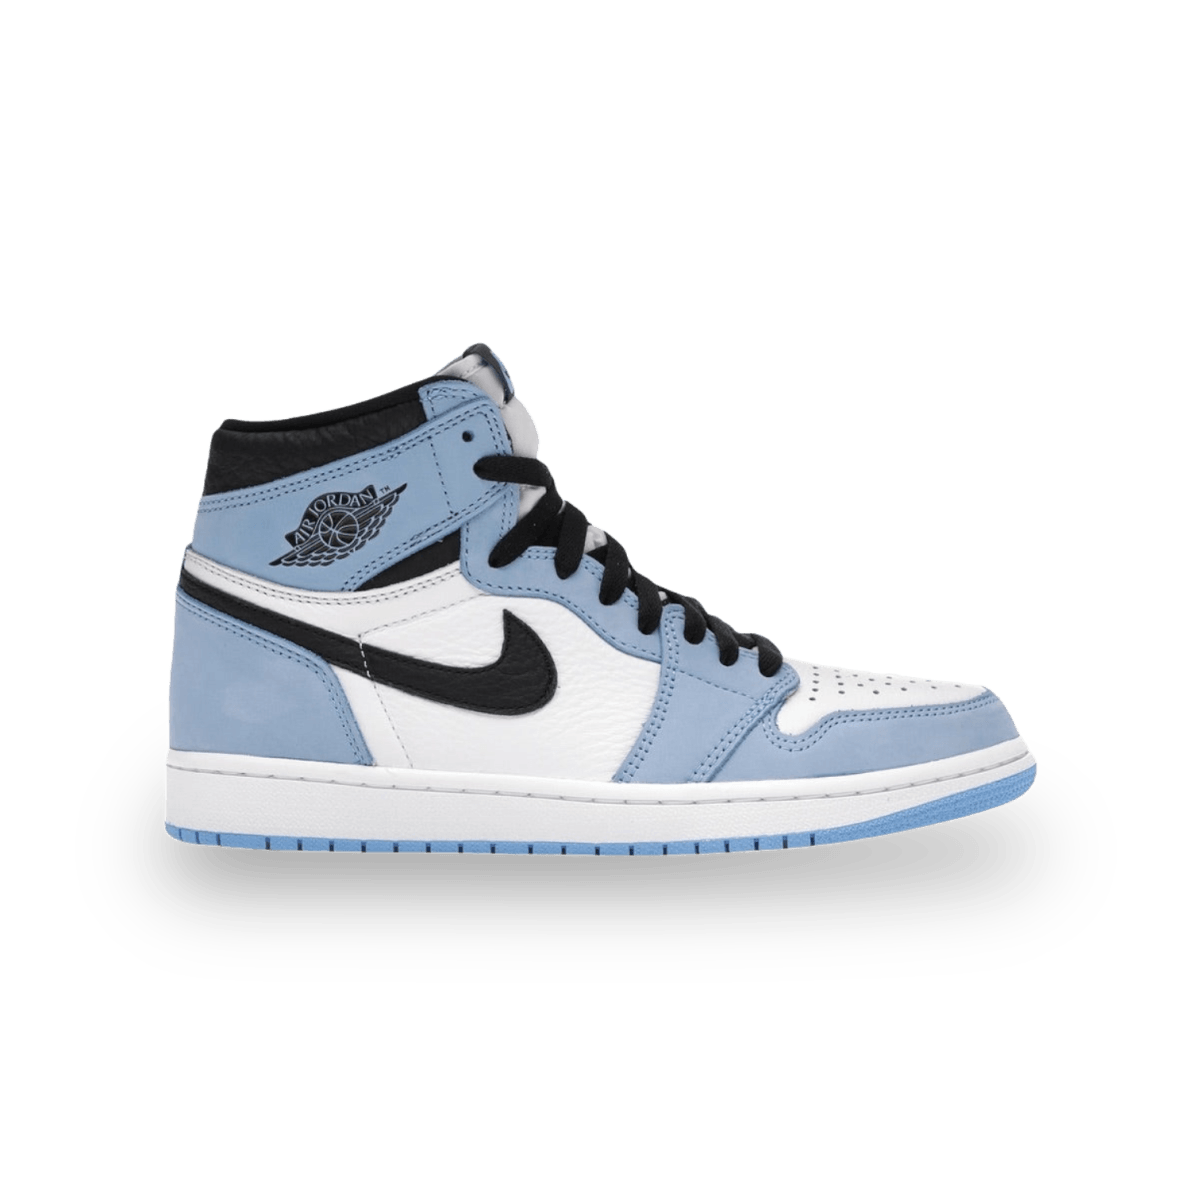 Jordan 1 Retro High University Blue - Grade School - High Sneaker - Jawns on Fire Sneakers & Streetwear